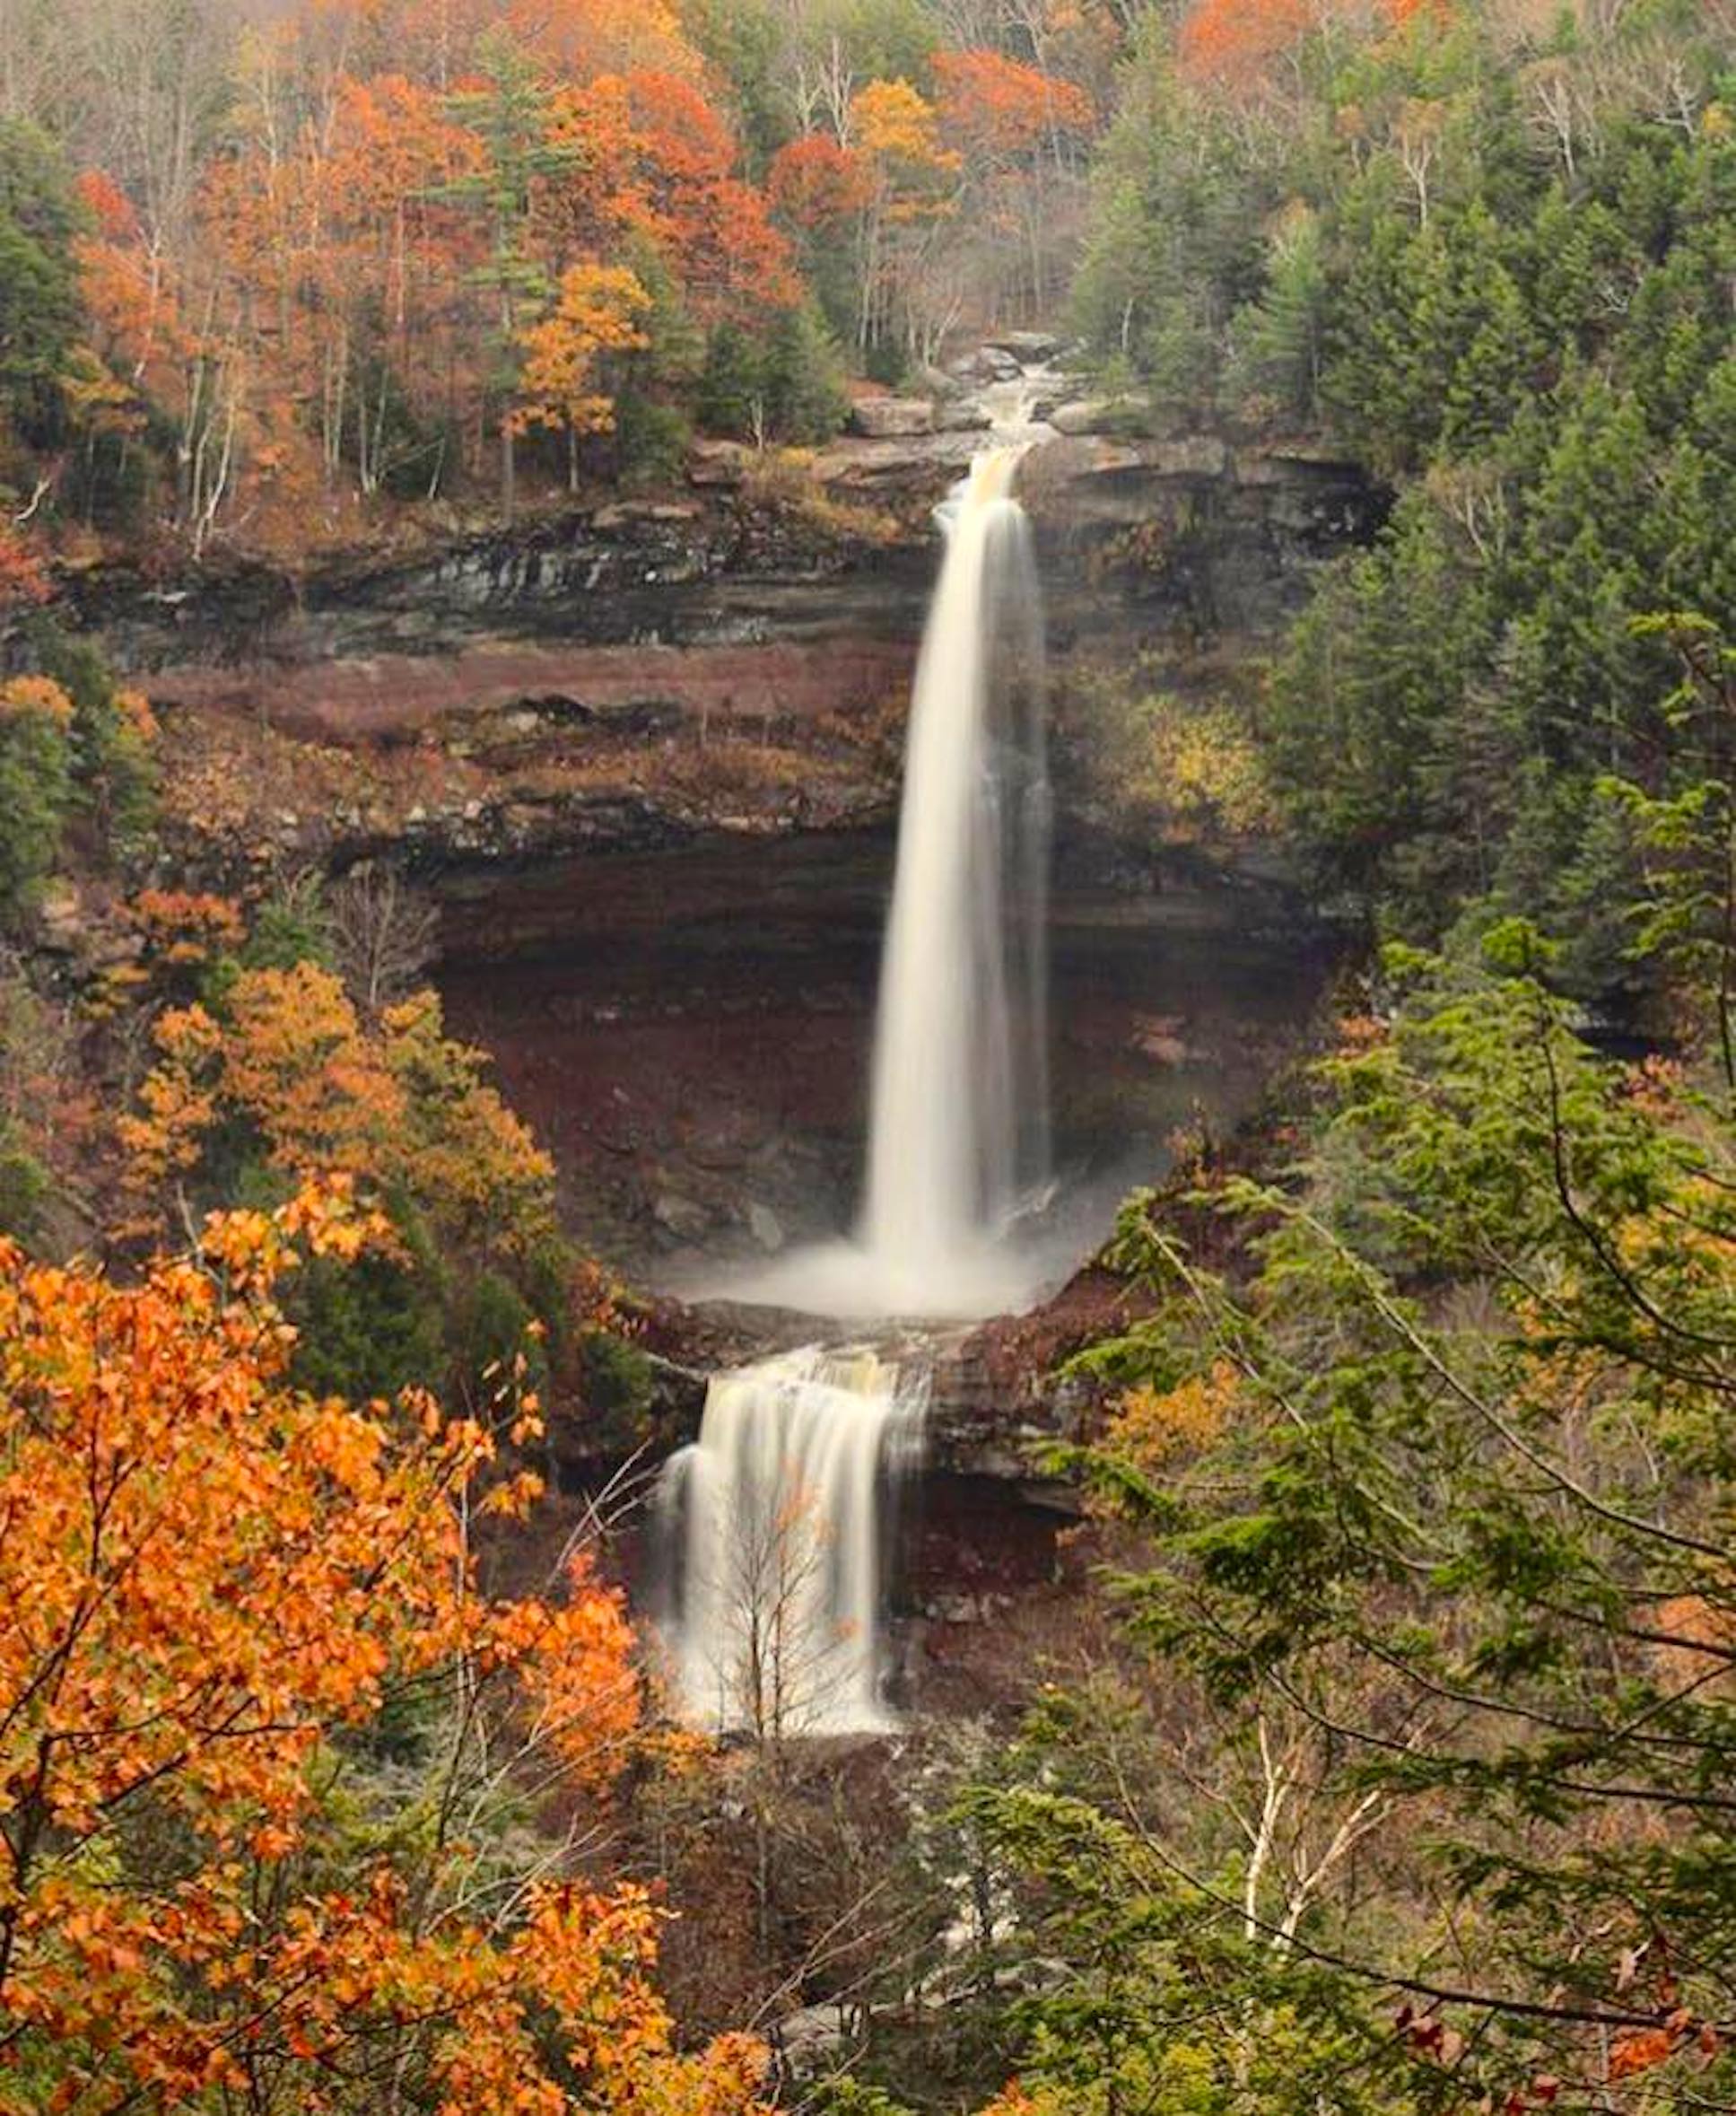 Waterfall in autumn.